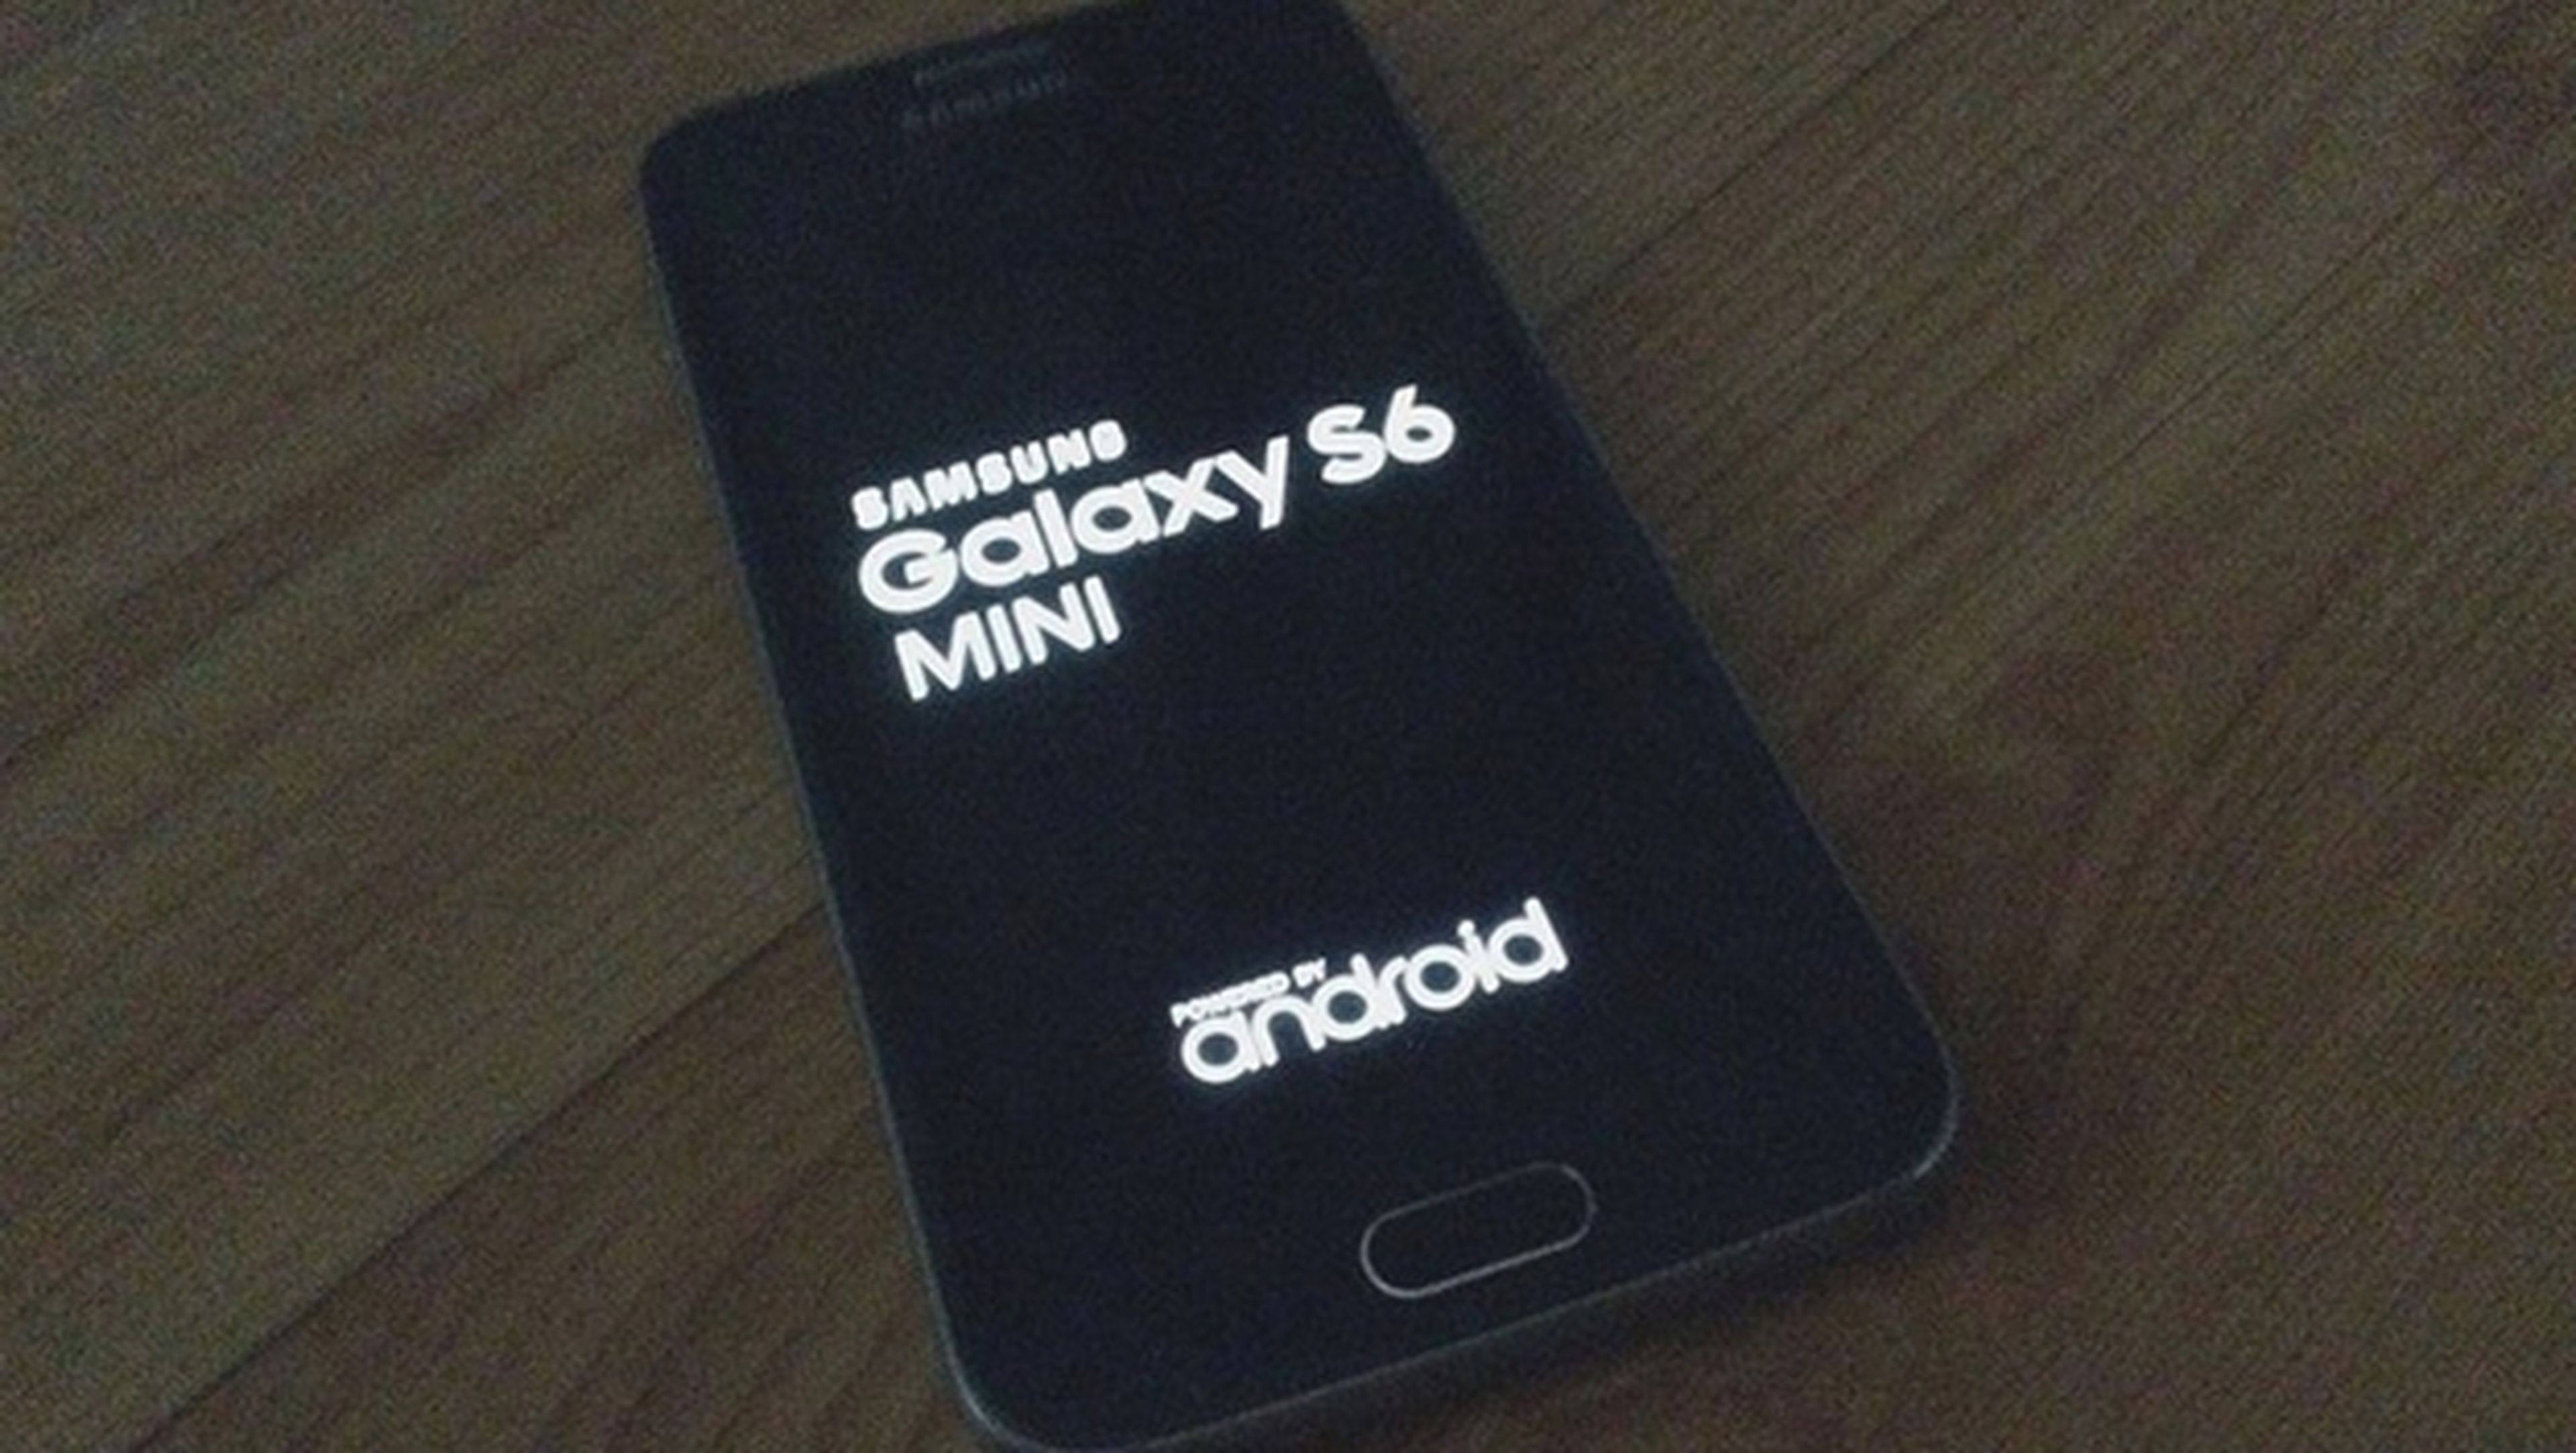 Samsung Galaxy S6 Mini, primeras imágenes y características.